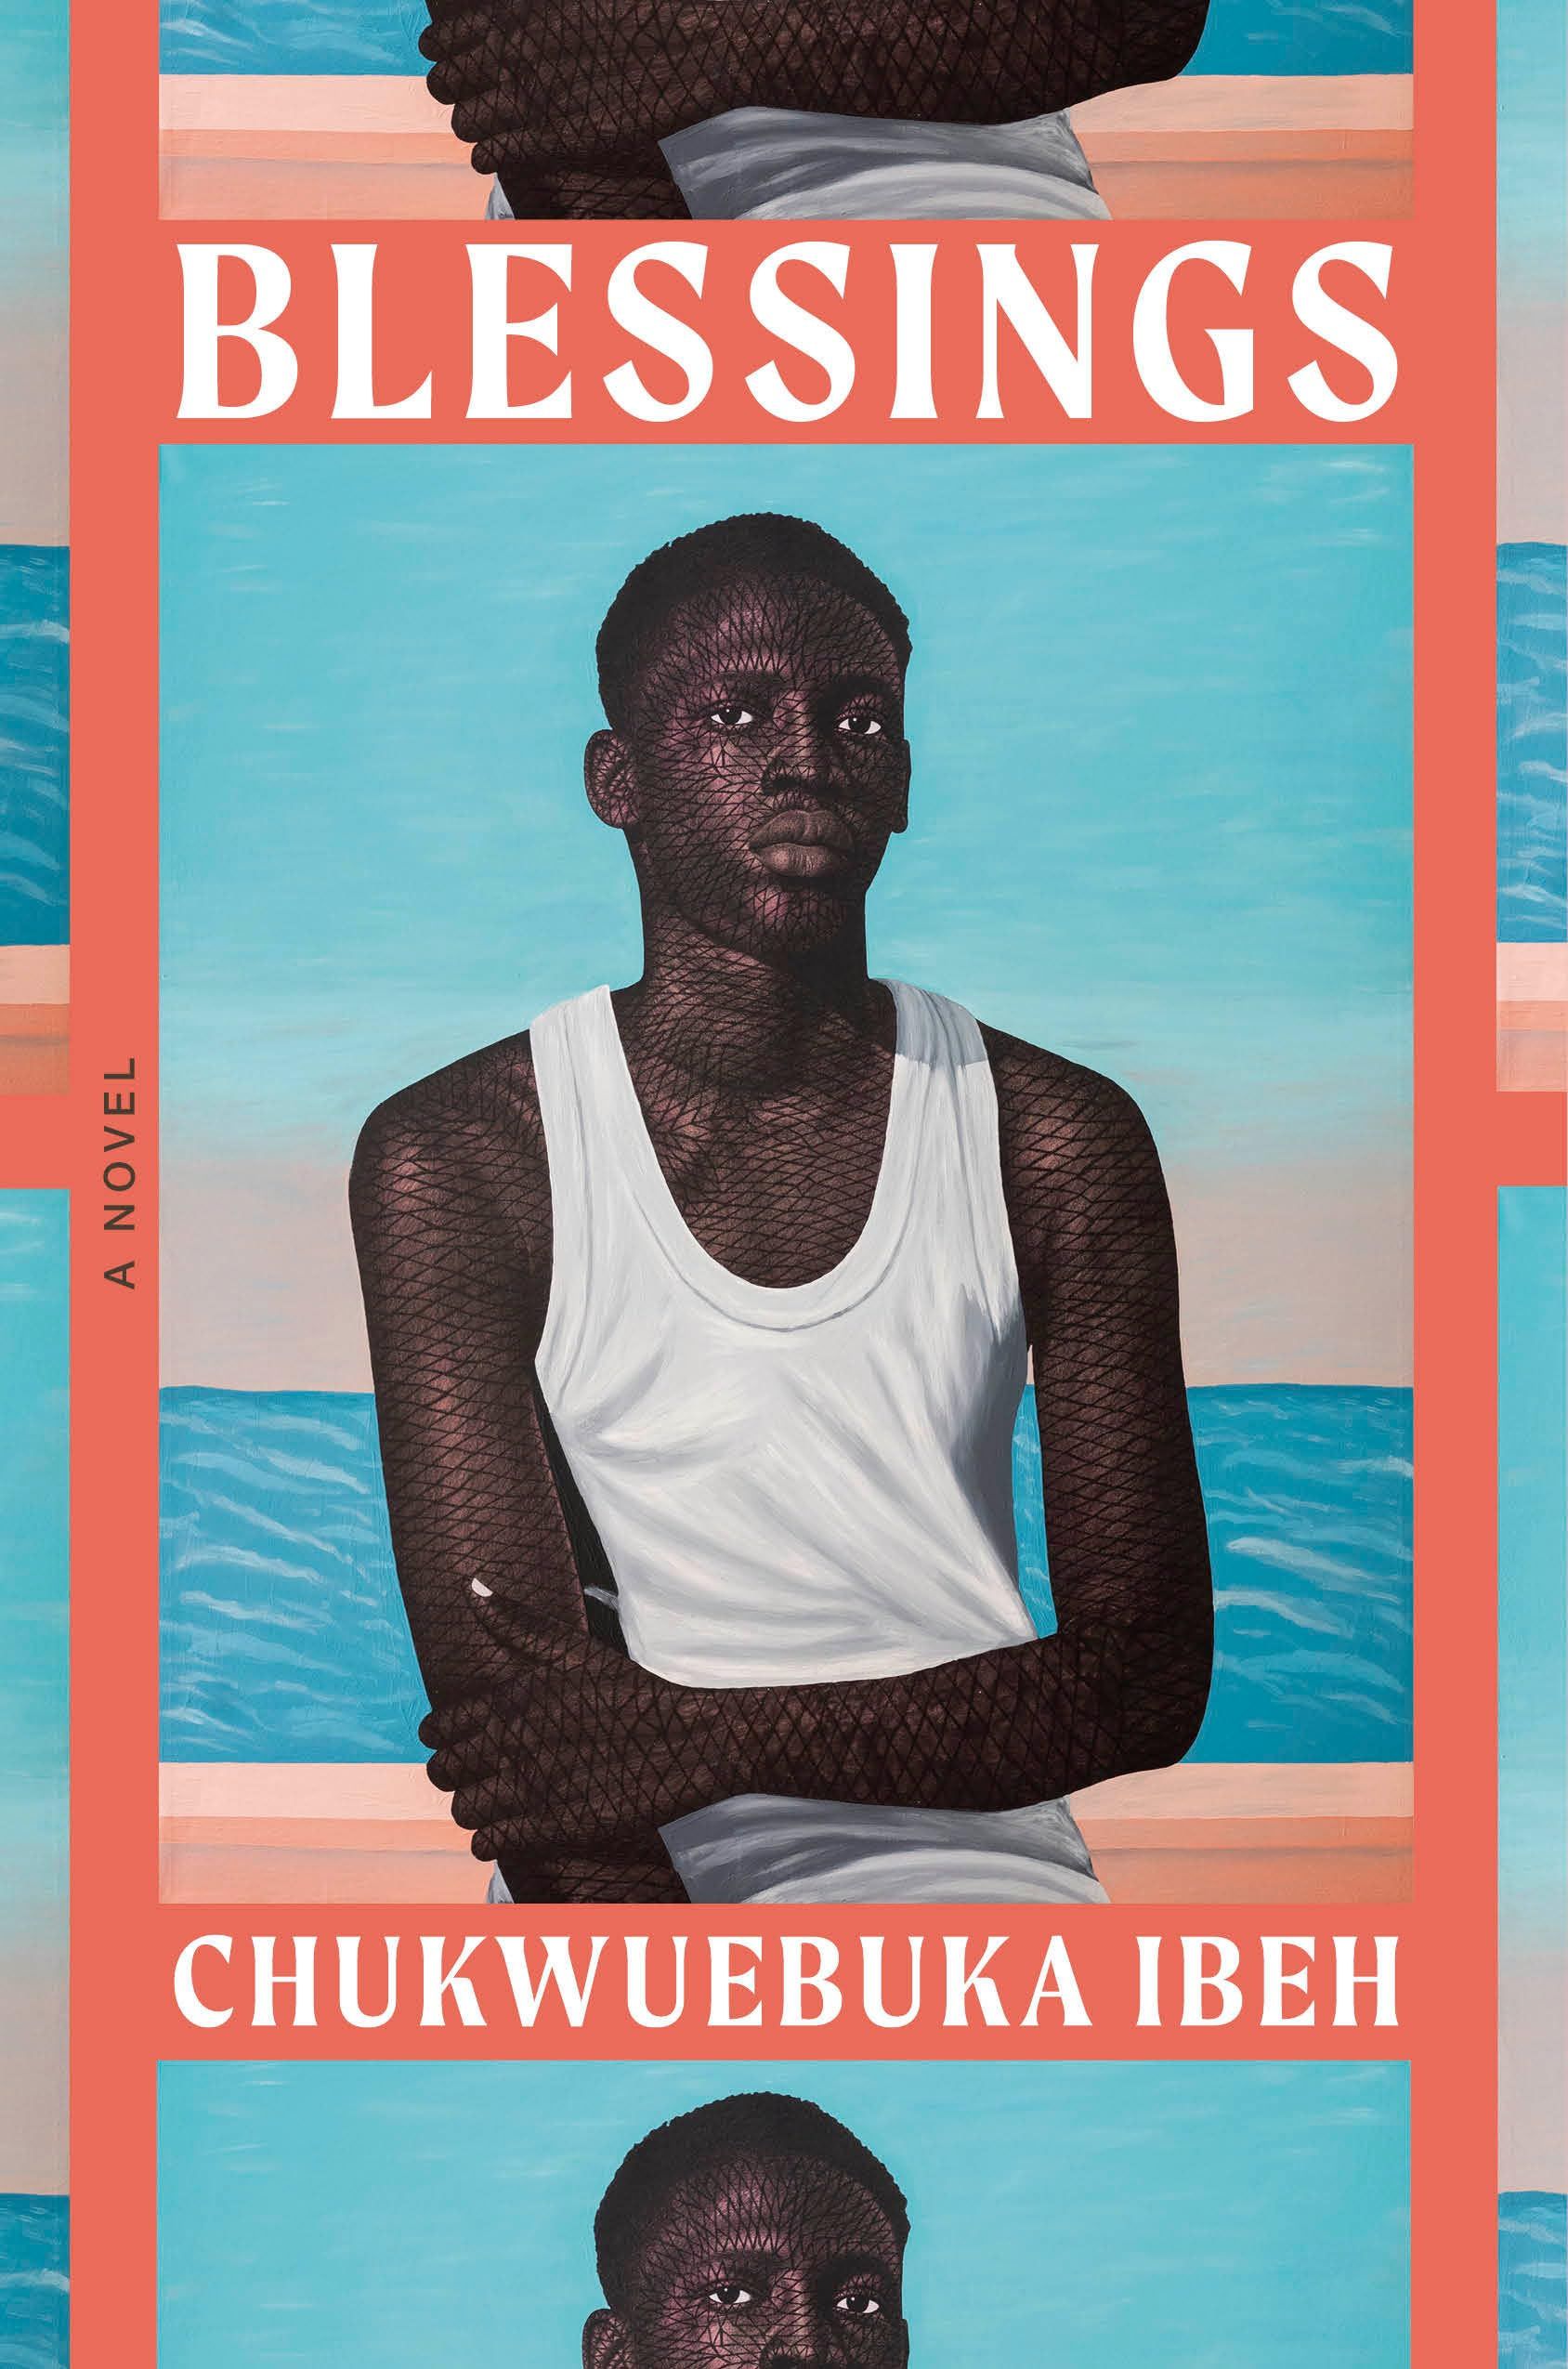 couverture de Blessings de Chukwuebuka Ibeh